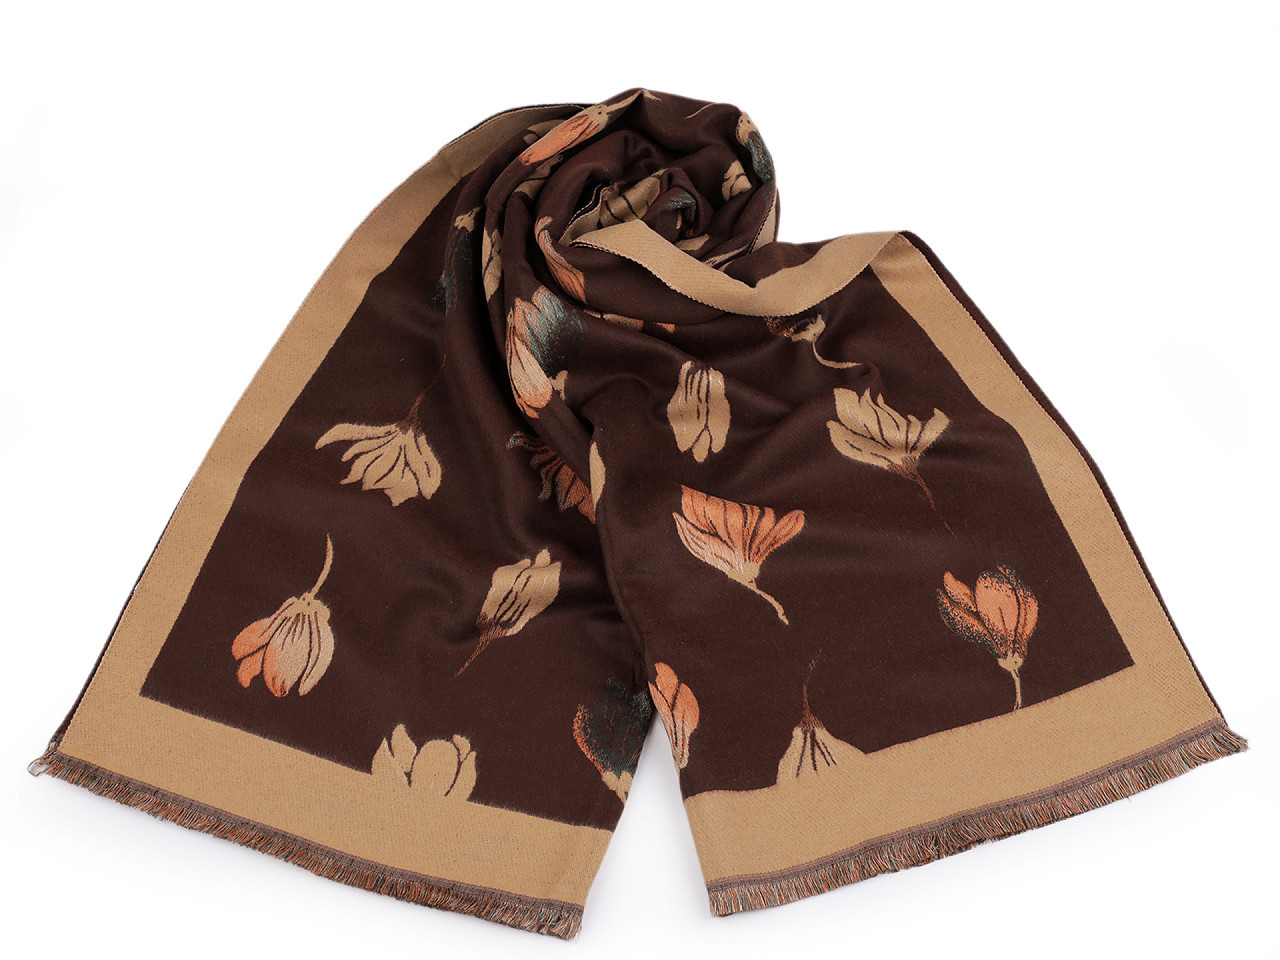 Šátek / šála typu kašmír s třásněmi, květy 65x190 cm, barva 3 béžová hnědá